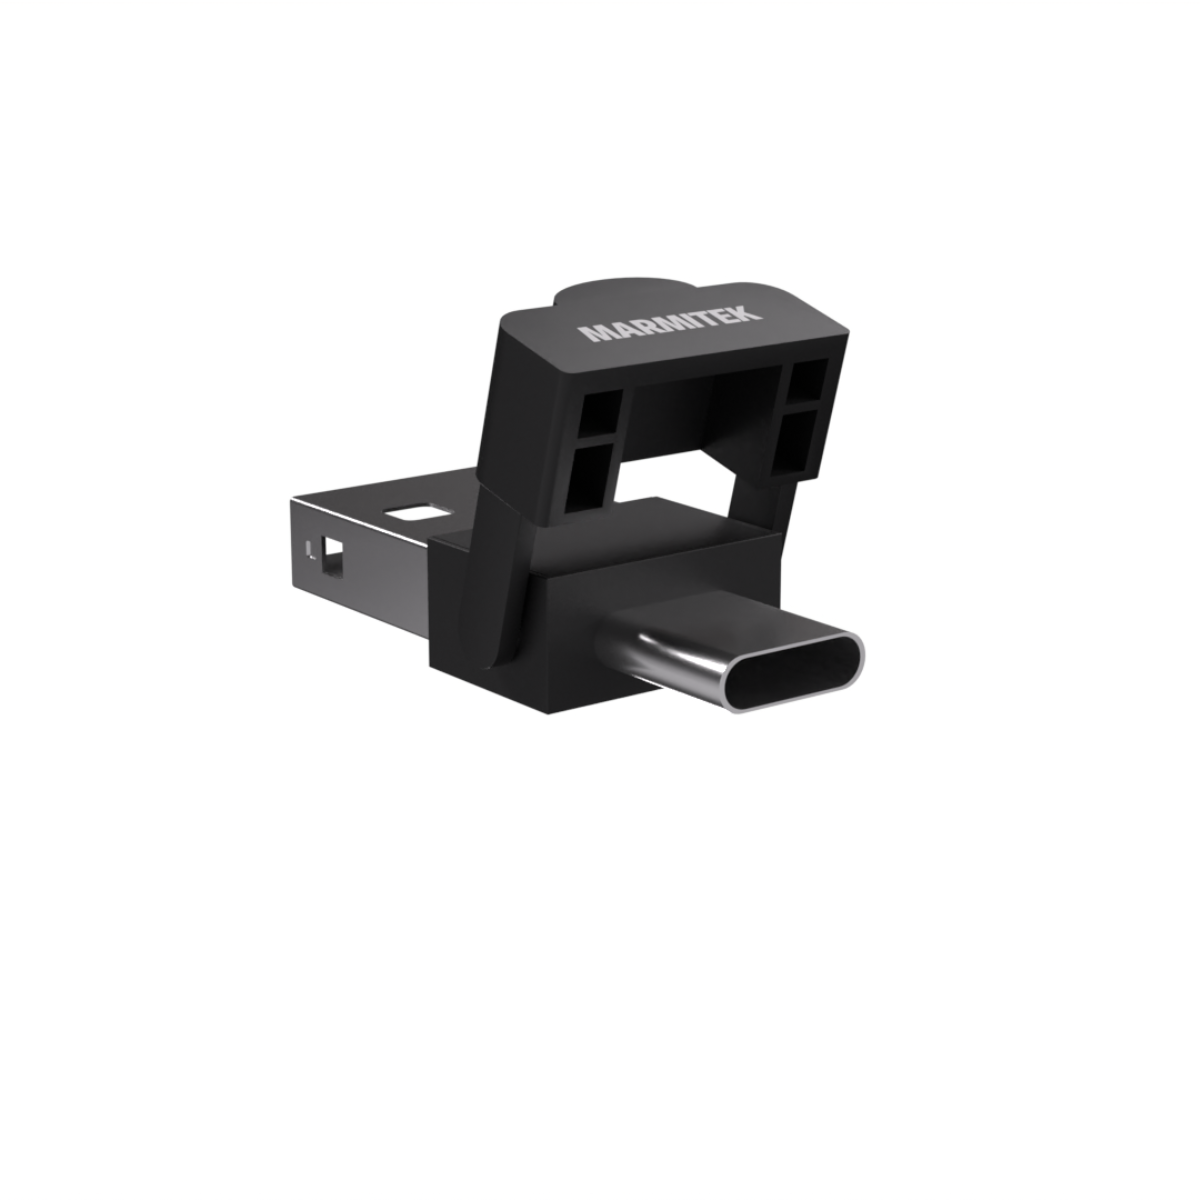 WPR 400 - Puntatore laser presentazioni - Clicker per presentazioni avanzato con puntatore digitale, zoom e funzione Air Mouse